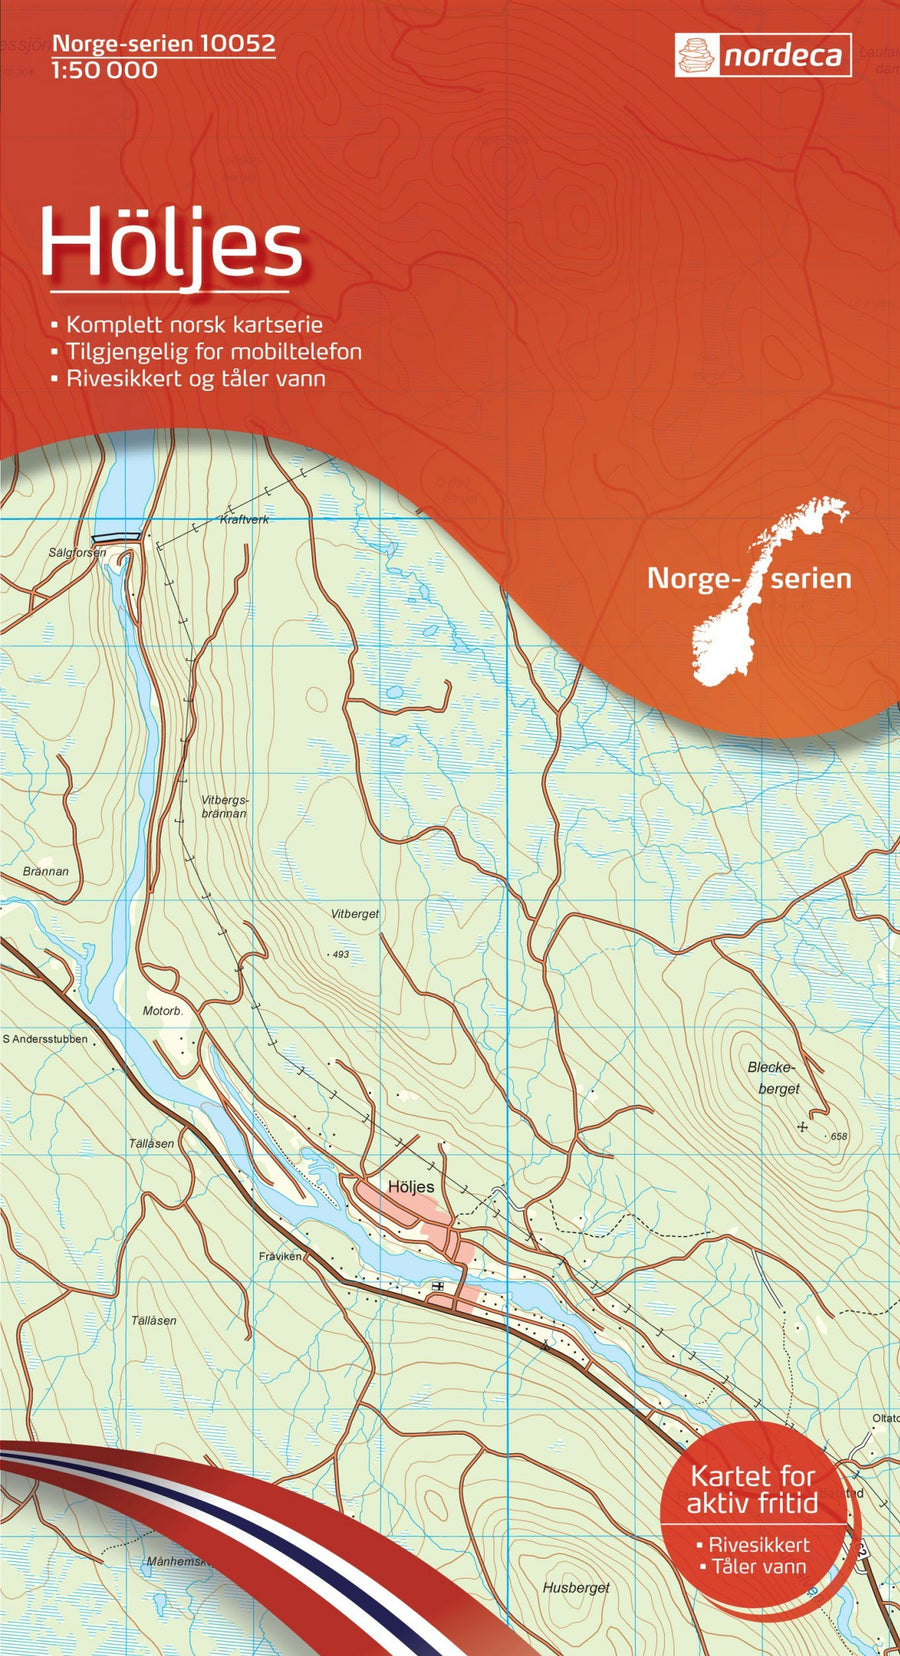 Carte de randonnée n° 10052 - Holjes (Norvège) | Nordeca - Norge-serien carte pliée Nordeca 